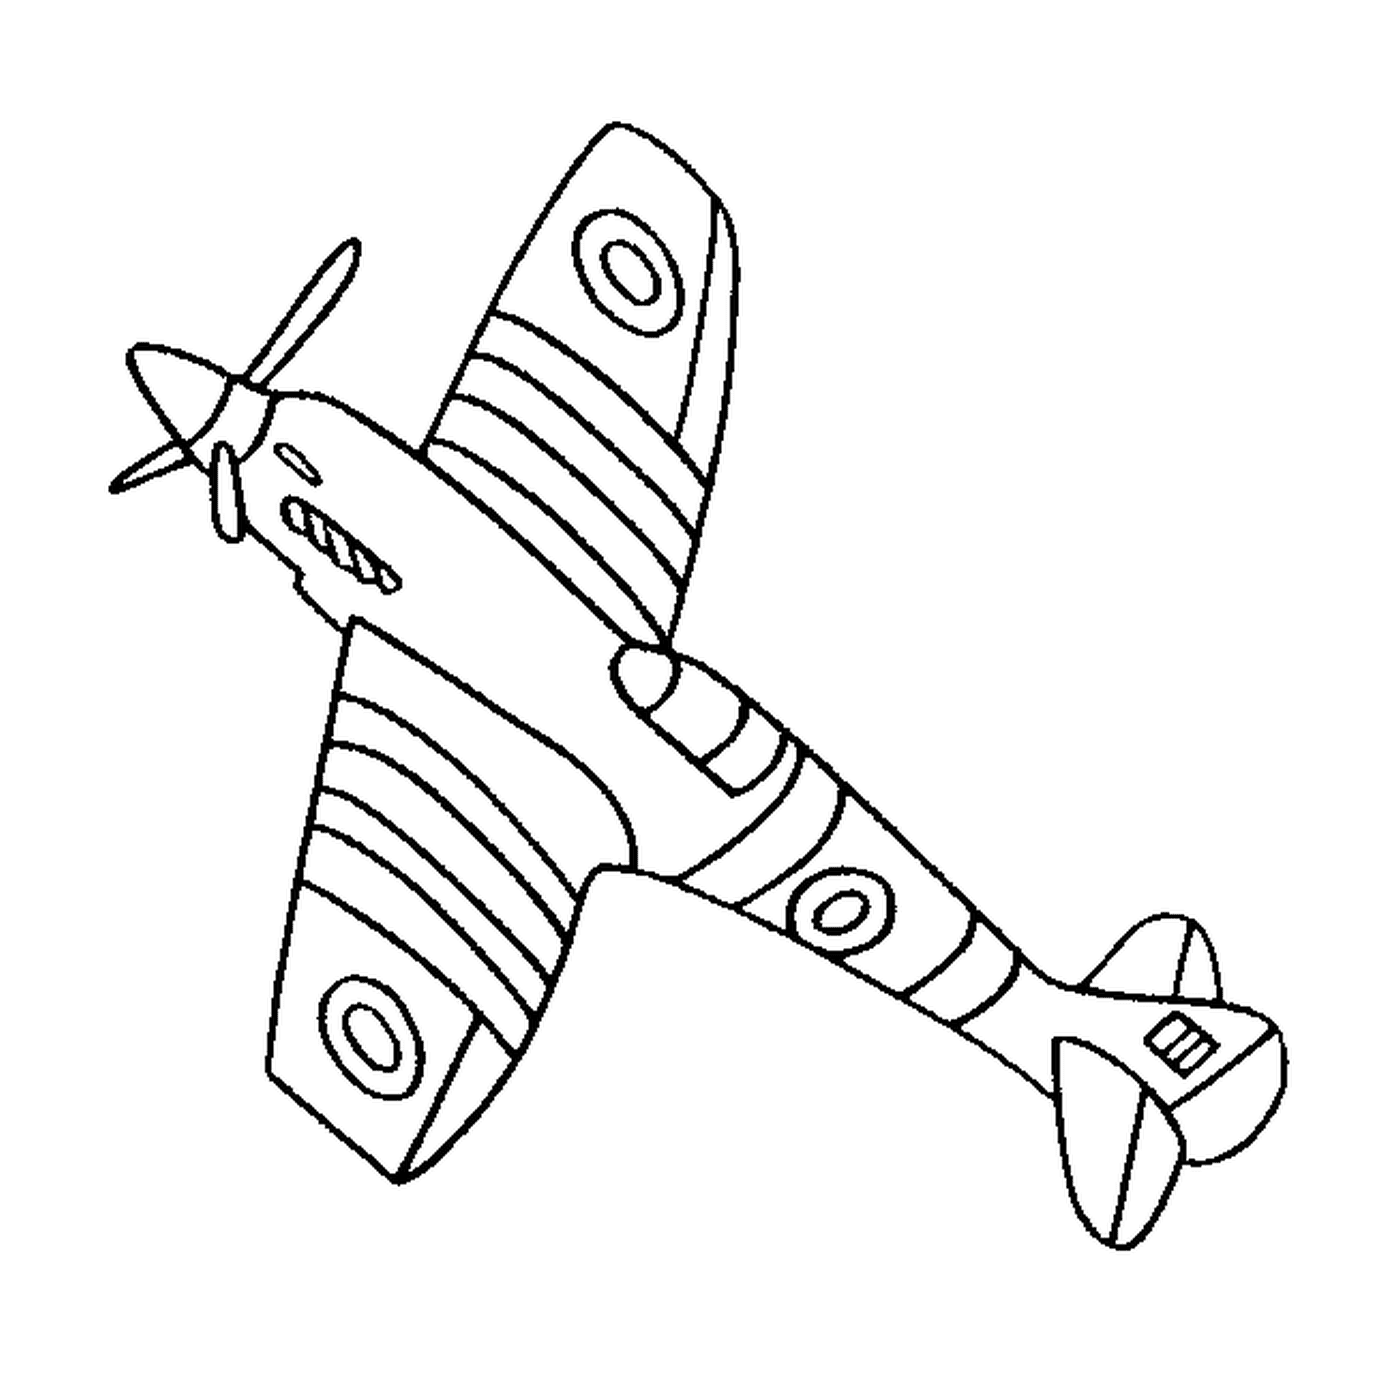   Un avion est dessiné 